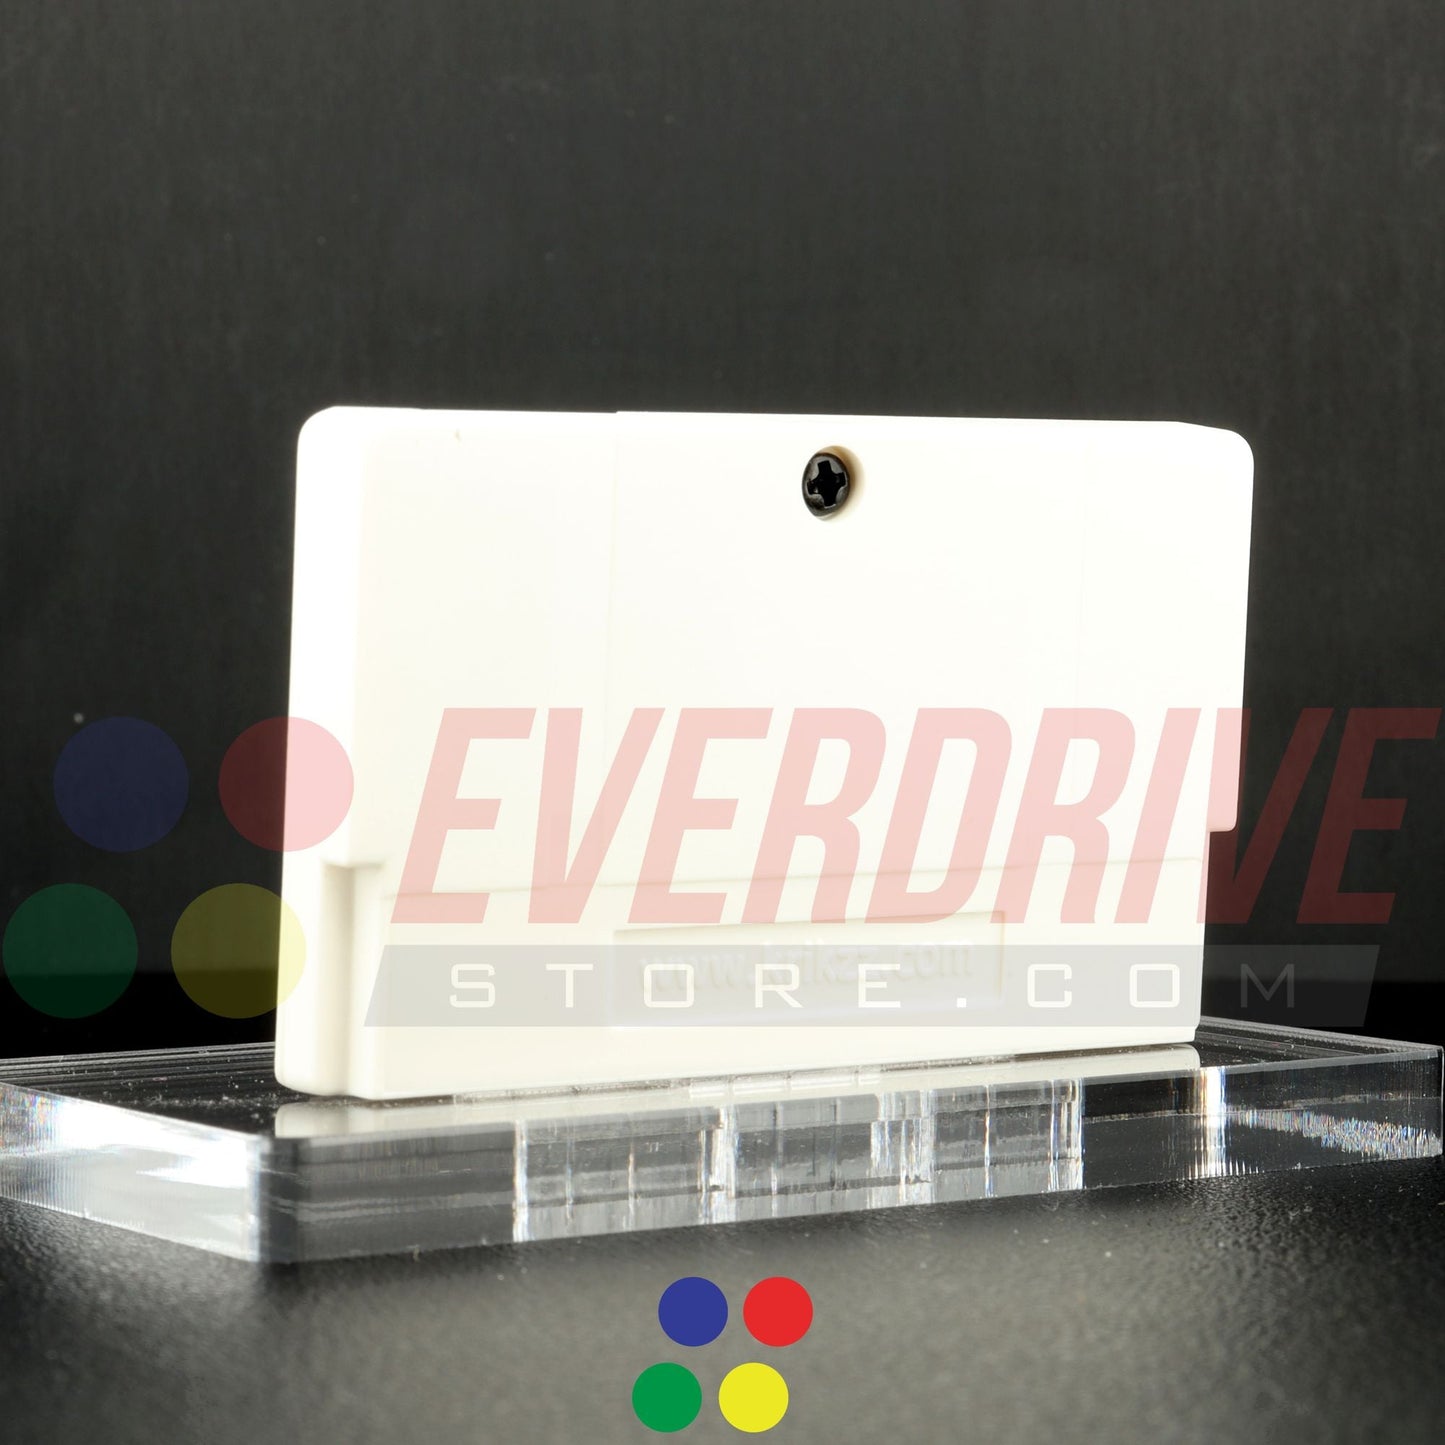 Everdrive GBA Mini - White